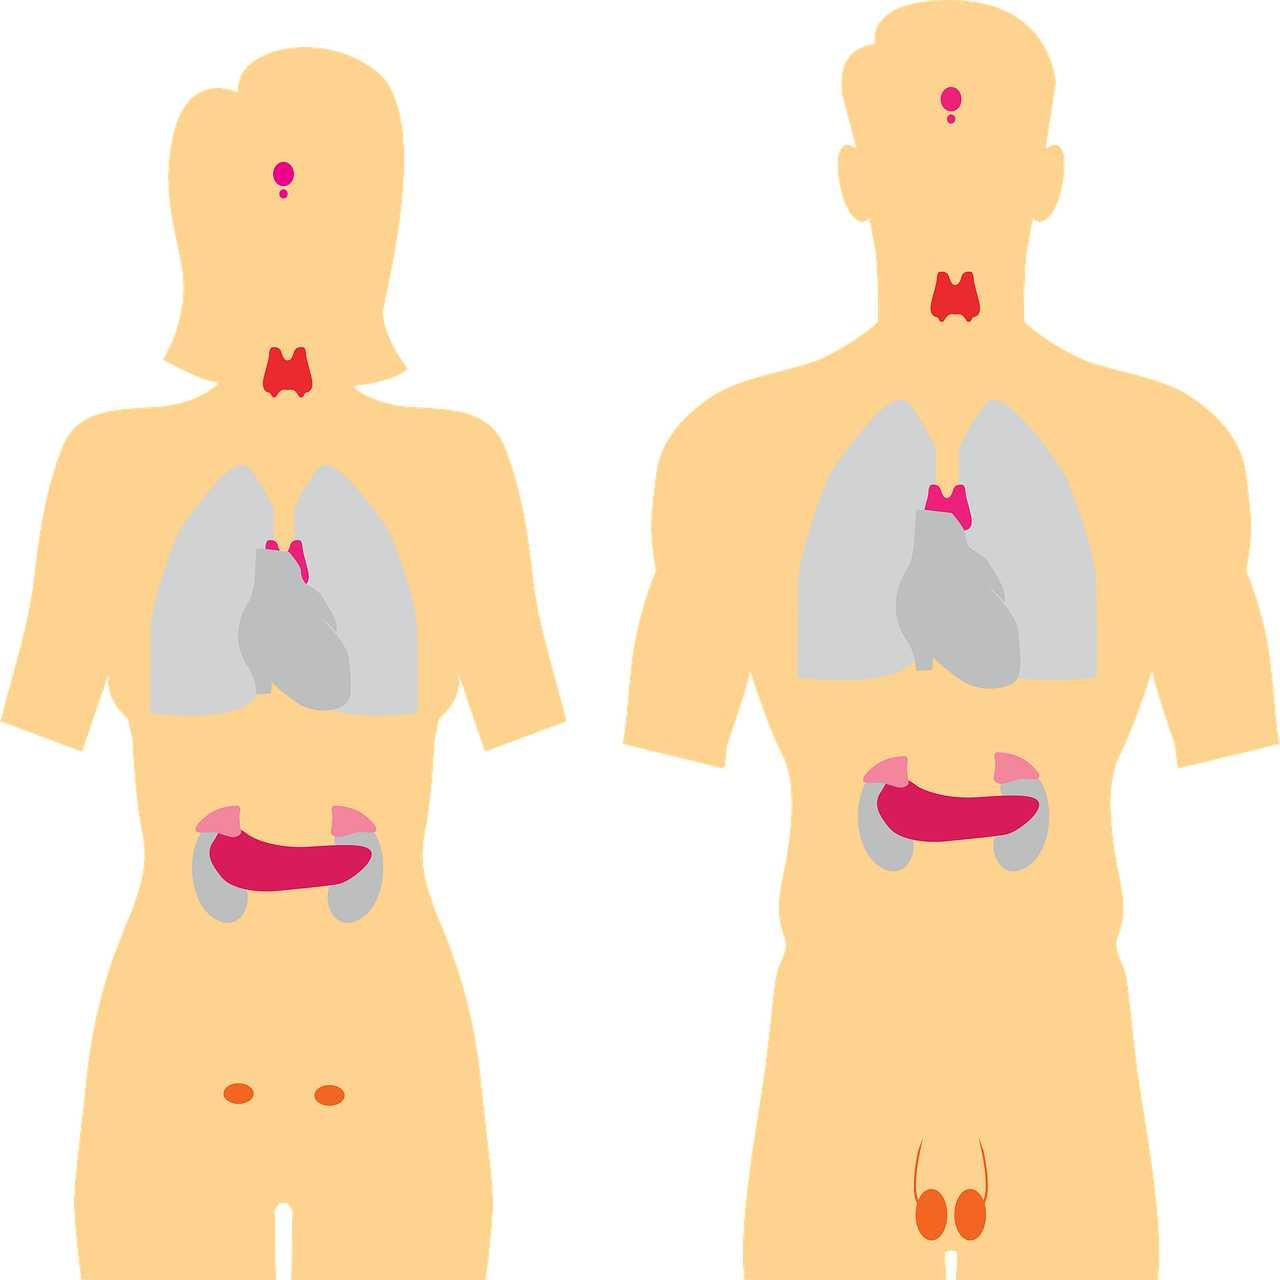 Ormoni tiroidei: valori, quali sono e cosa controllano